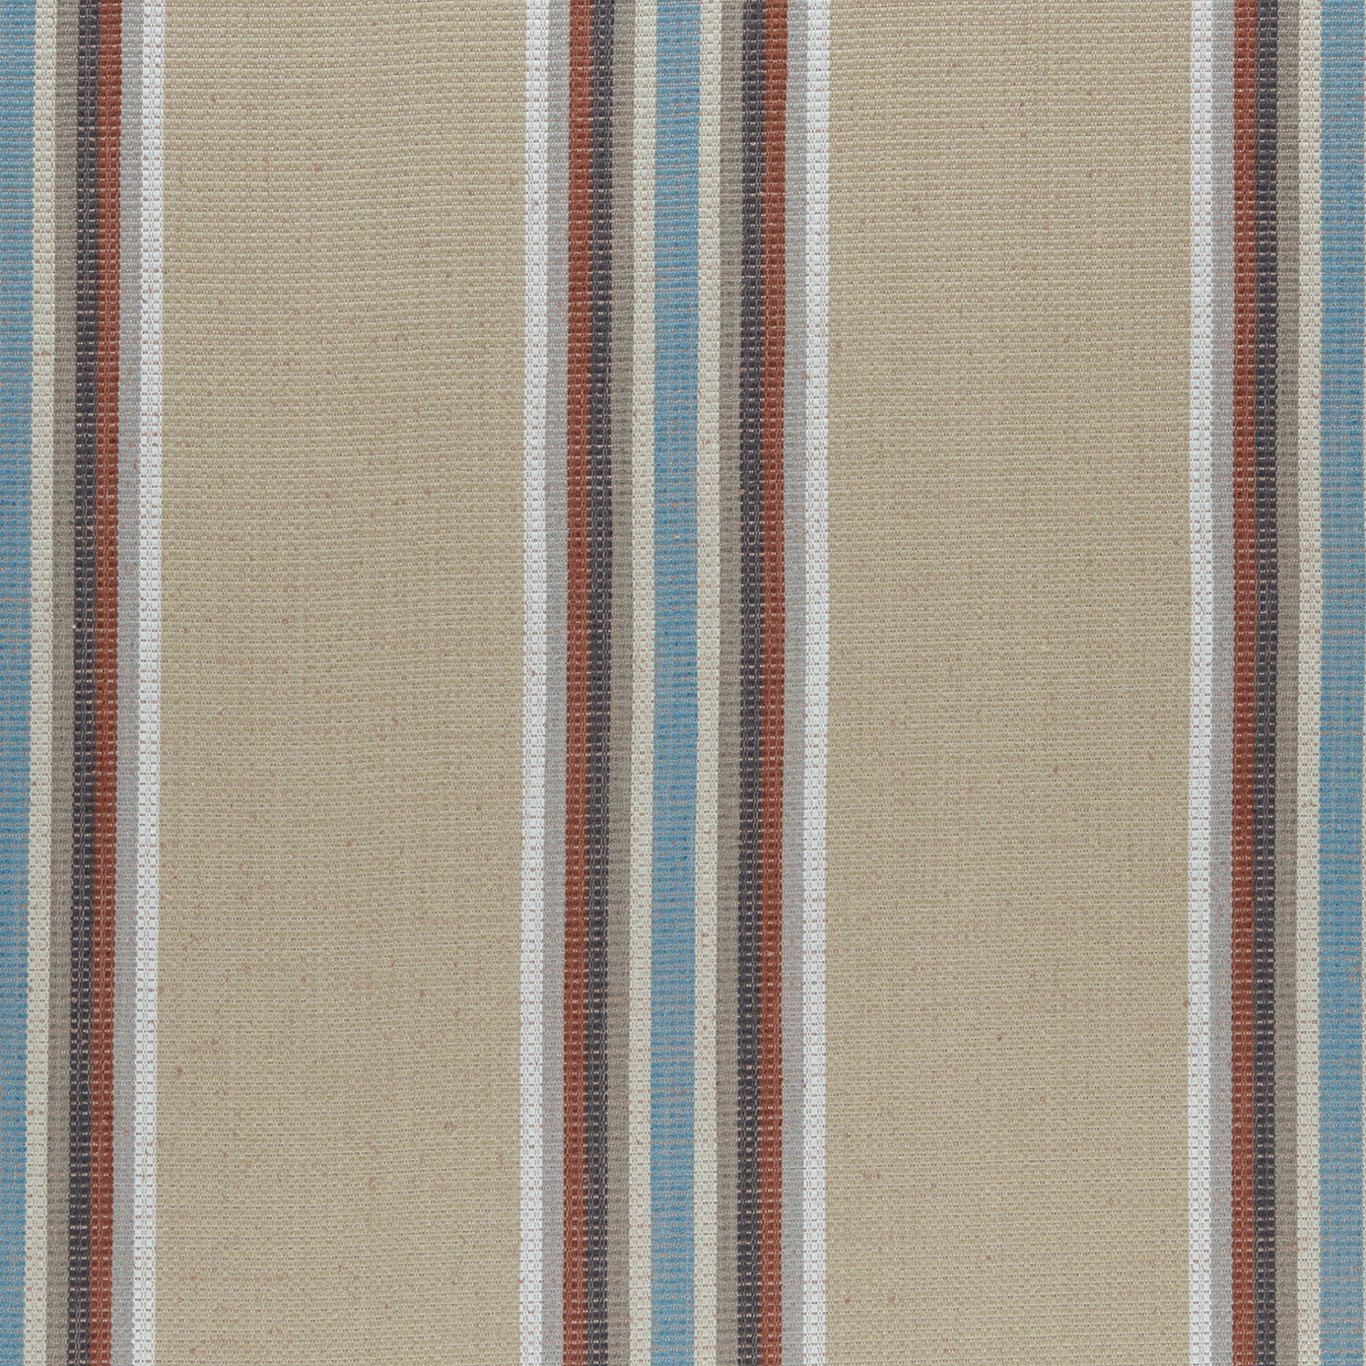 Imani Cinnabar/Aqua Fabric by CNC